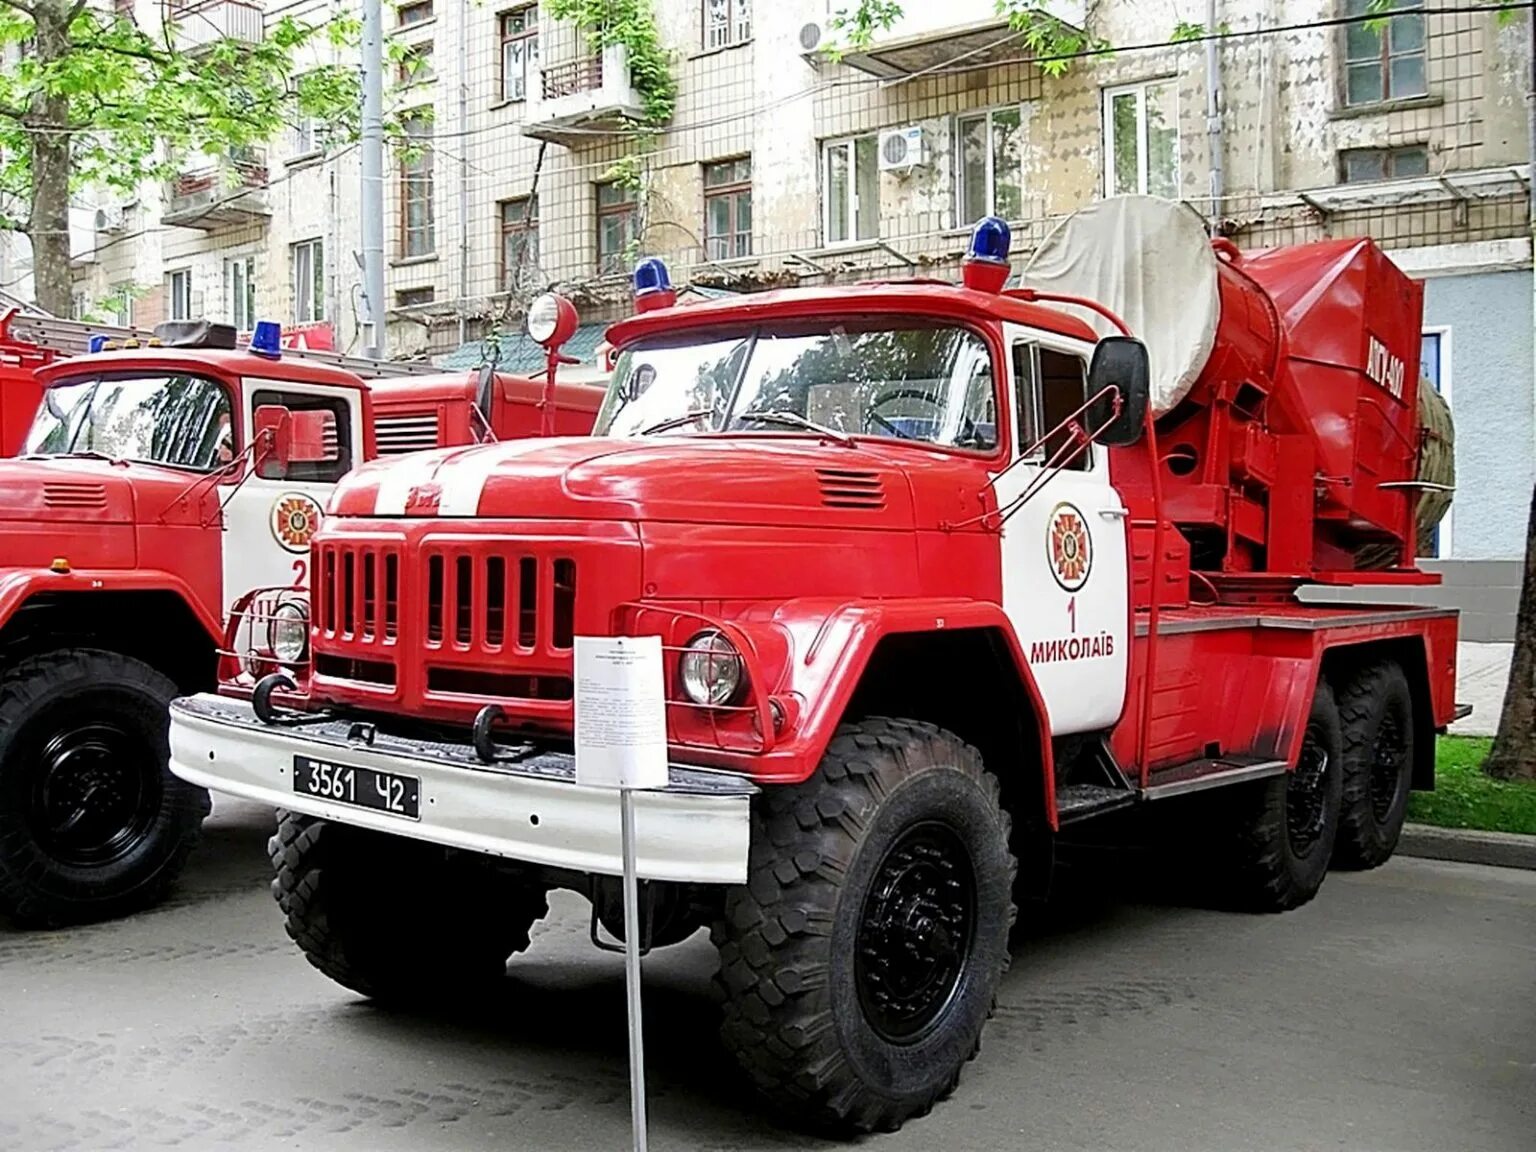 Пожарные автомобили находящиеся на вооружении подразделения. АГВТ ЗИЛ 131. АГПУ 400 ЗИЛ 131. АГВТ-100 ЗИЛ-131. ЗИЛ 131 пожарный.